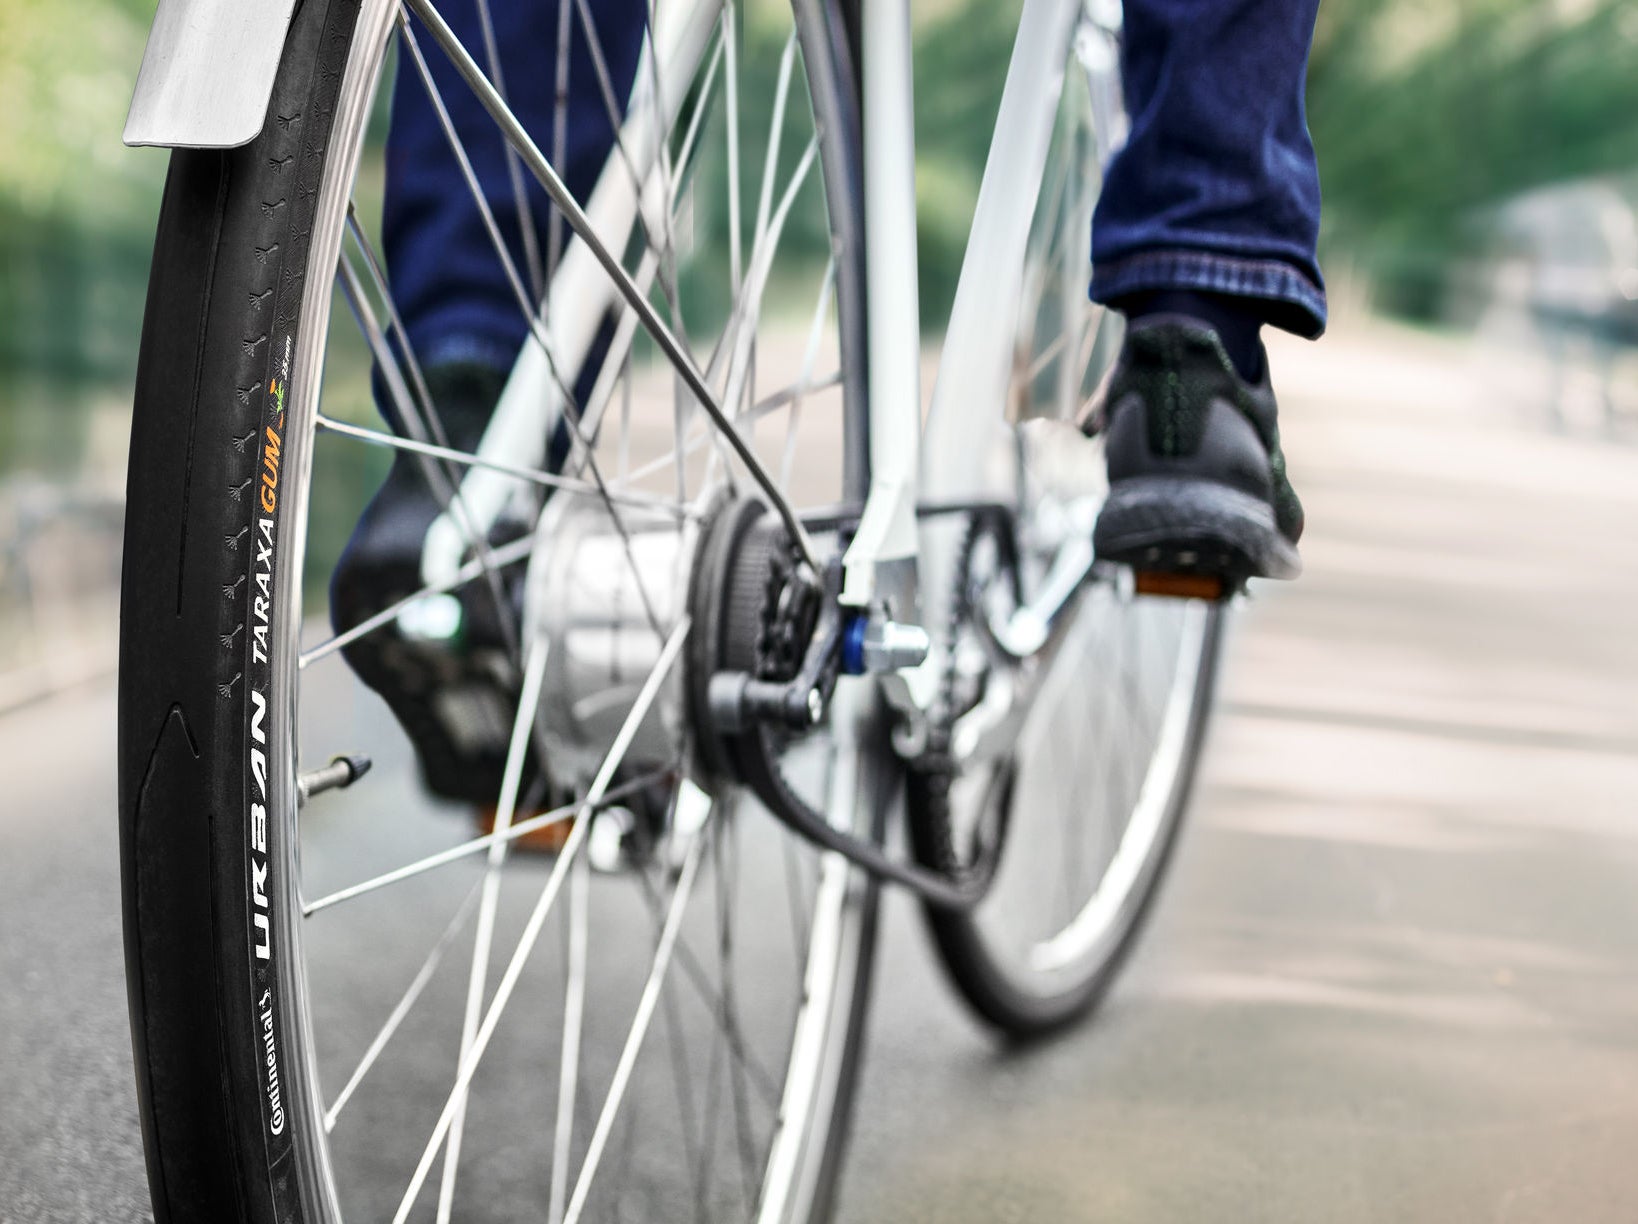 Eine Person fährt ein Fahrrad mit Taraxagum Reifen